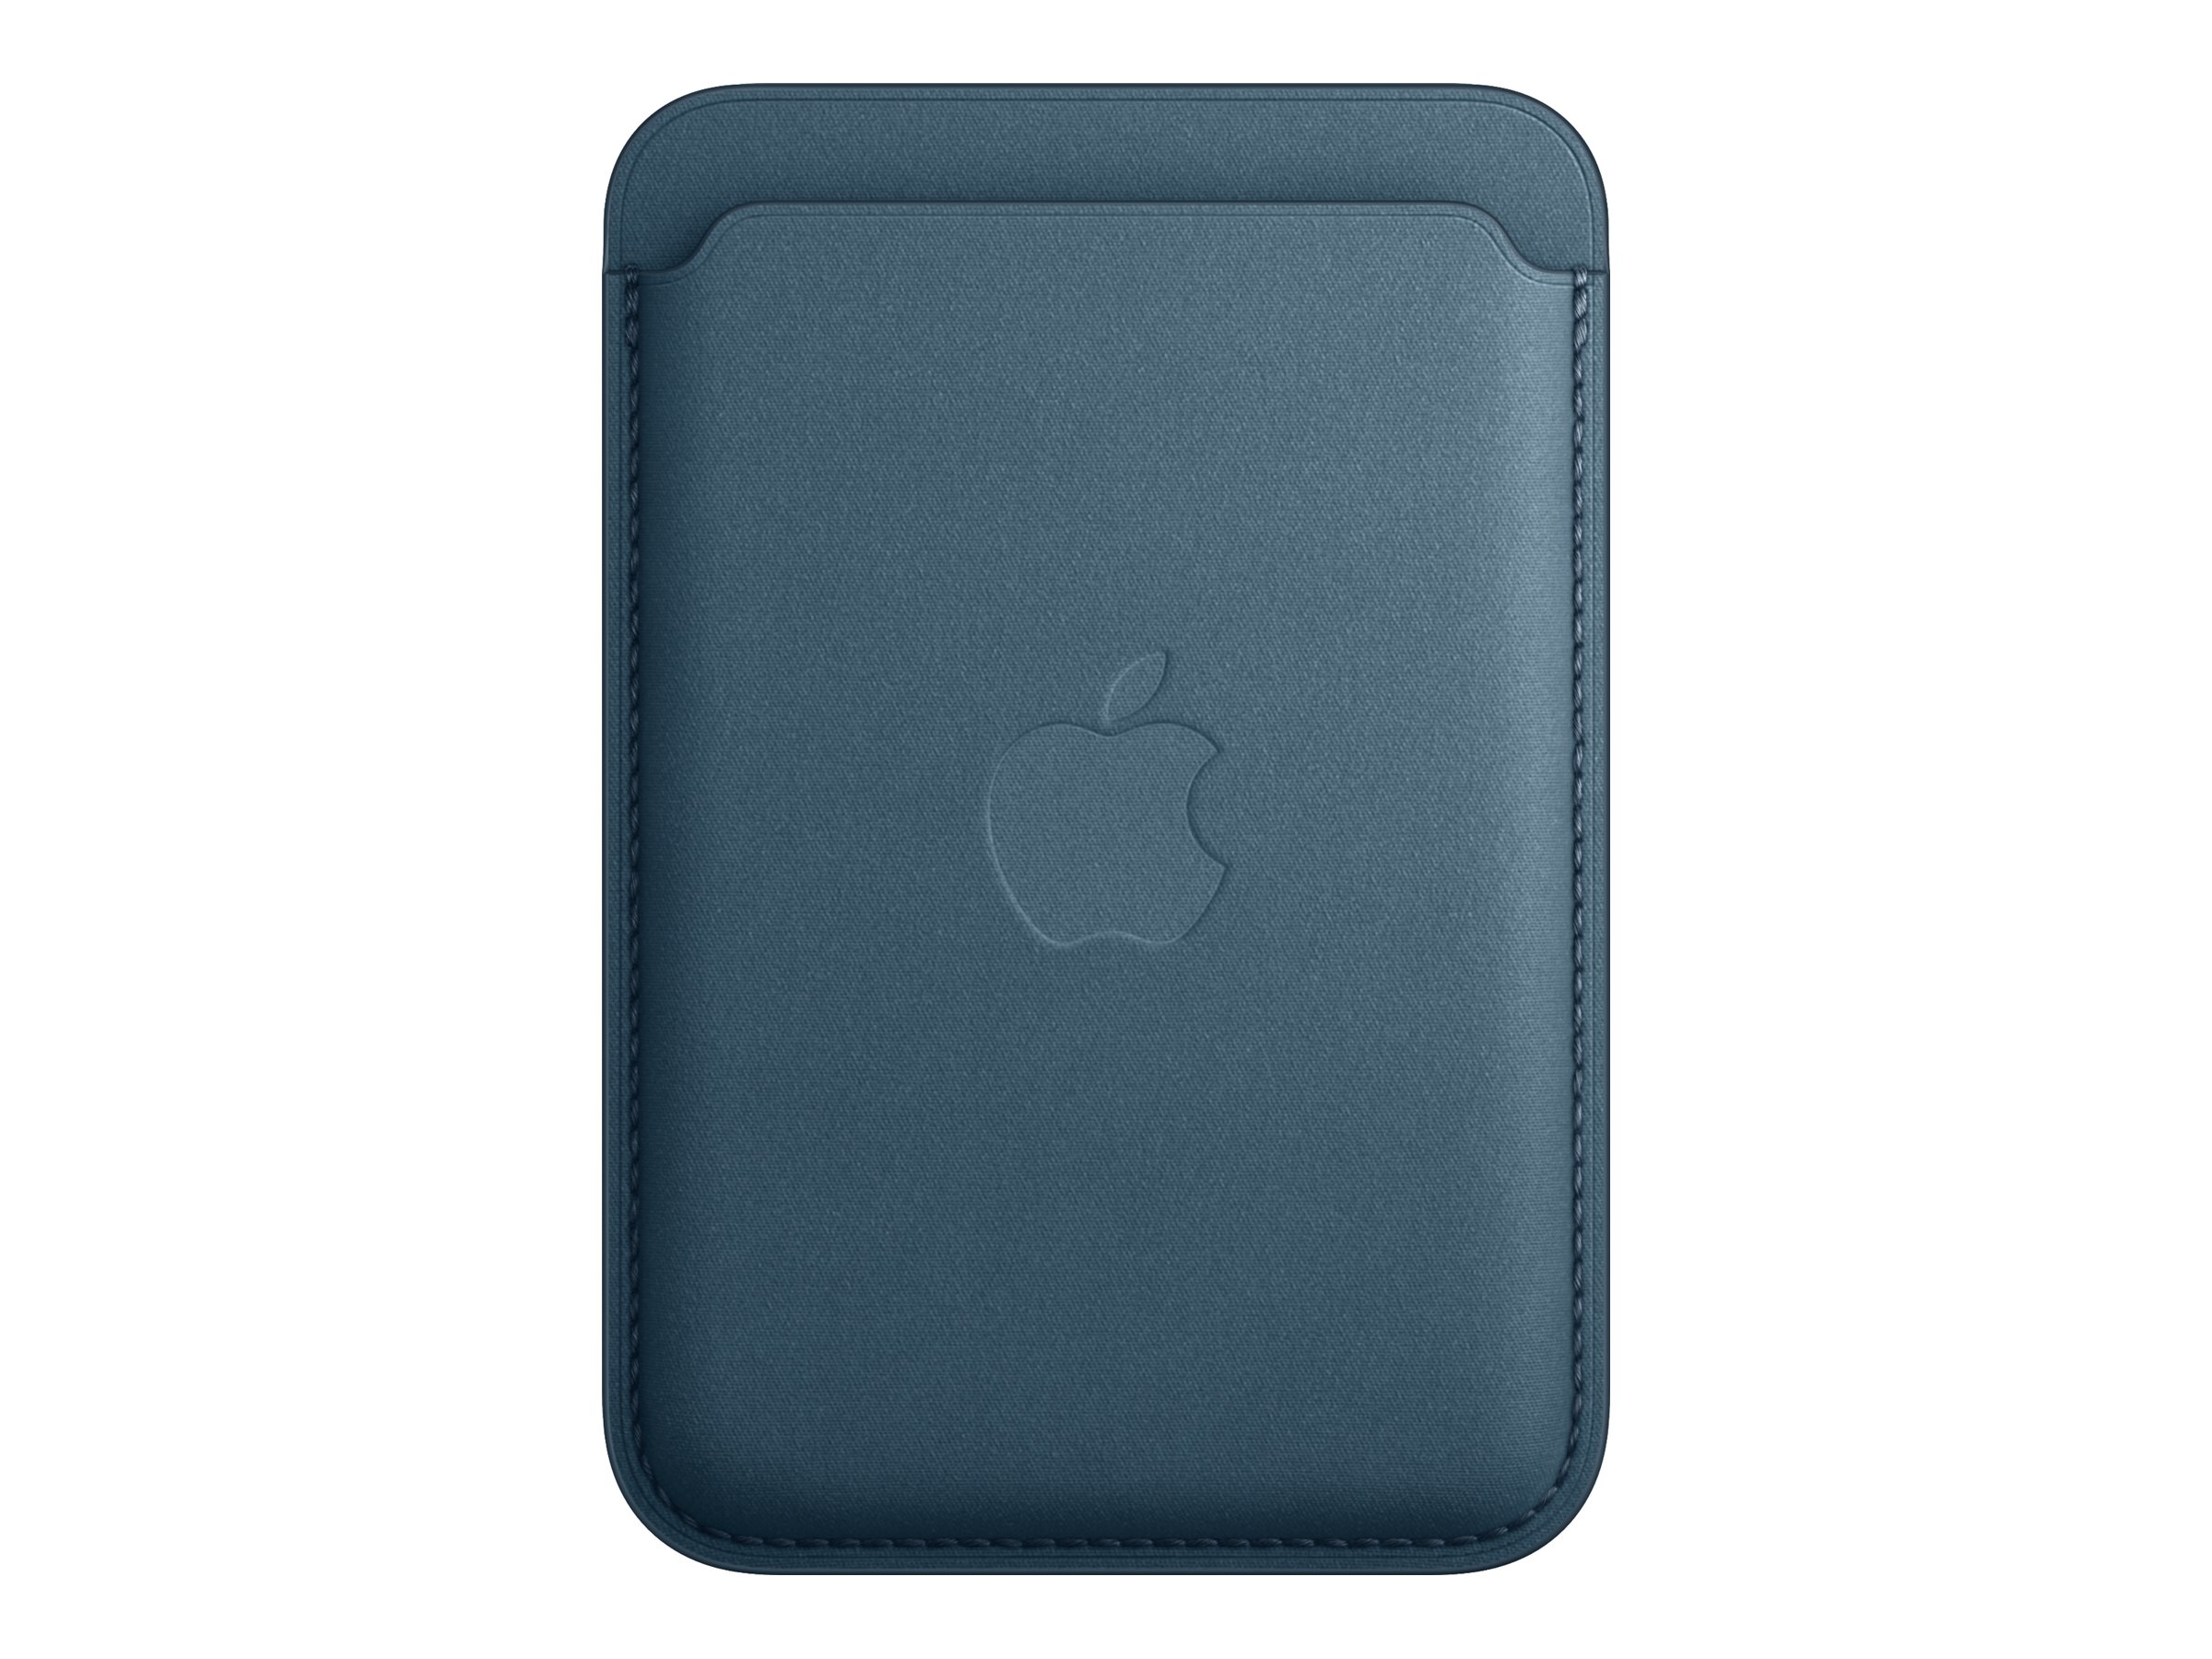 Apple - Portefeuille pour téléphone portable / carte de crédit - compatibilité avec MagSafe - tissu fin - bleu Pacifique - MT263ZM/A - Coques et étuis pour téléphone portable